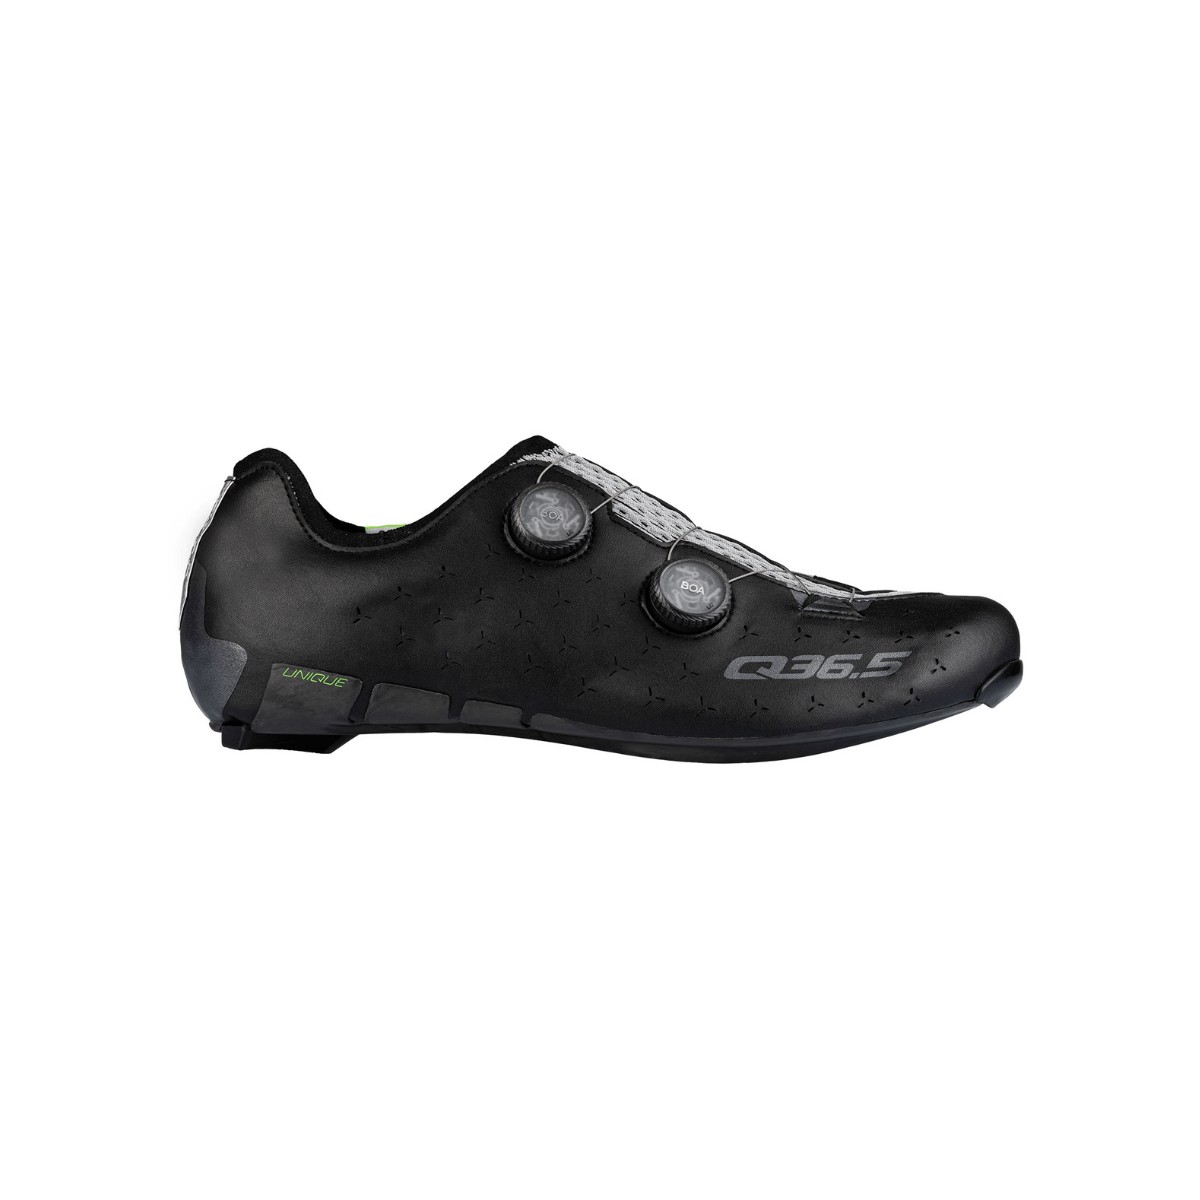 Photos - Cycling Shoes Q36.5 Unique Road Shoes Black, Size 44,5 - EUR 300.2.445